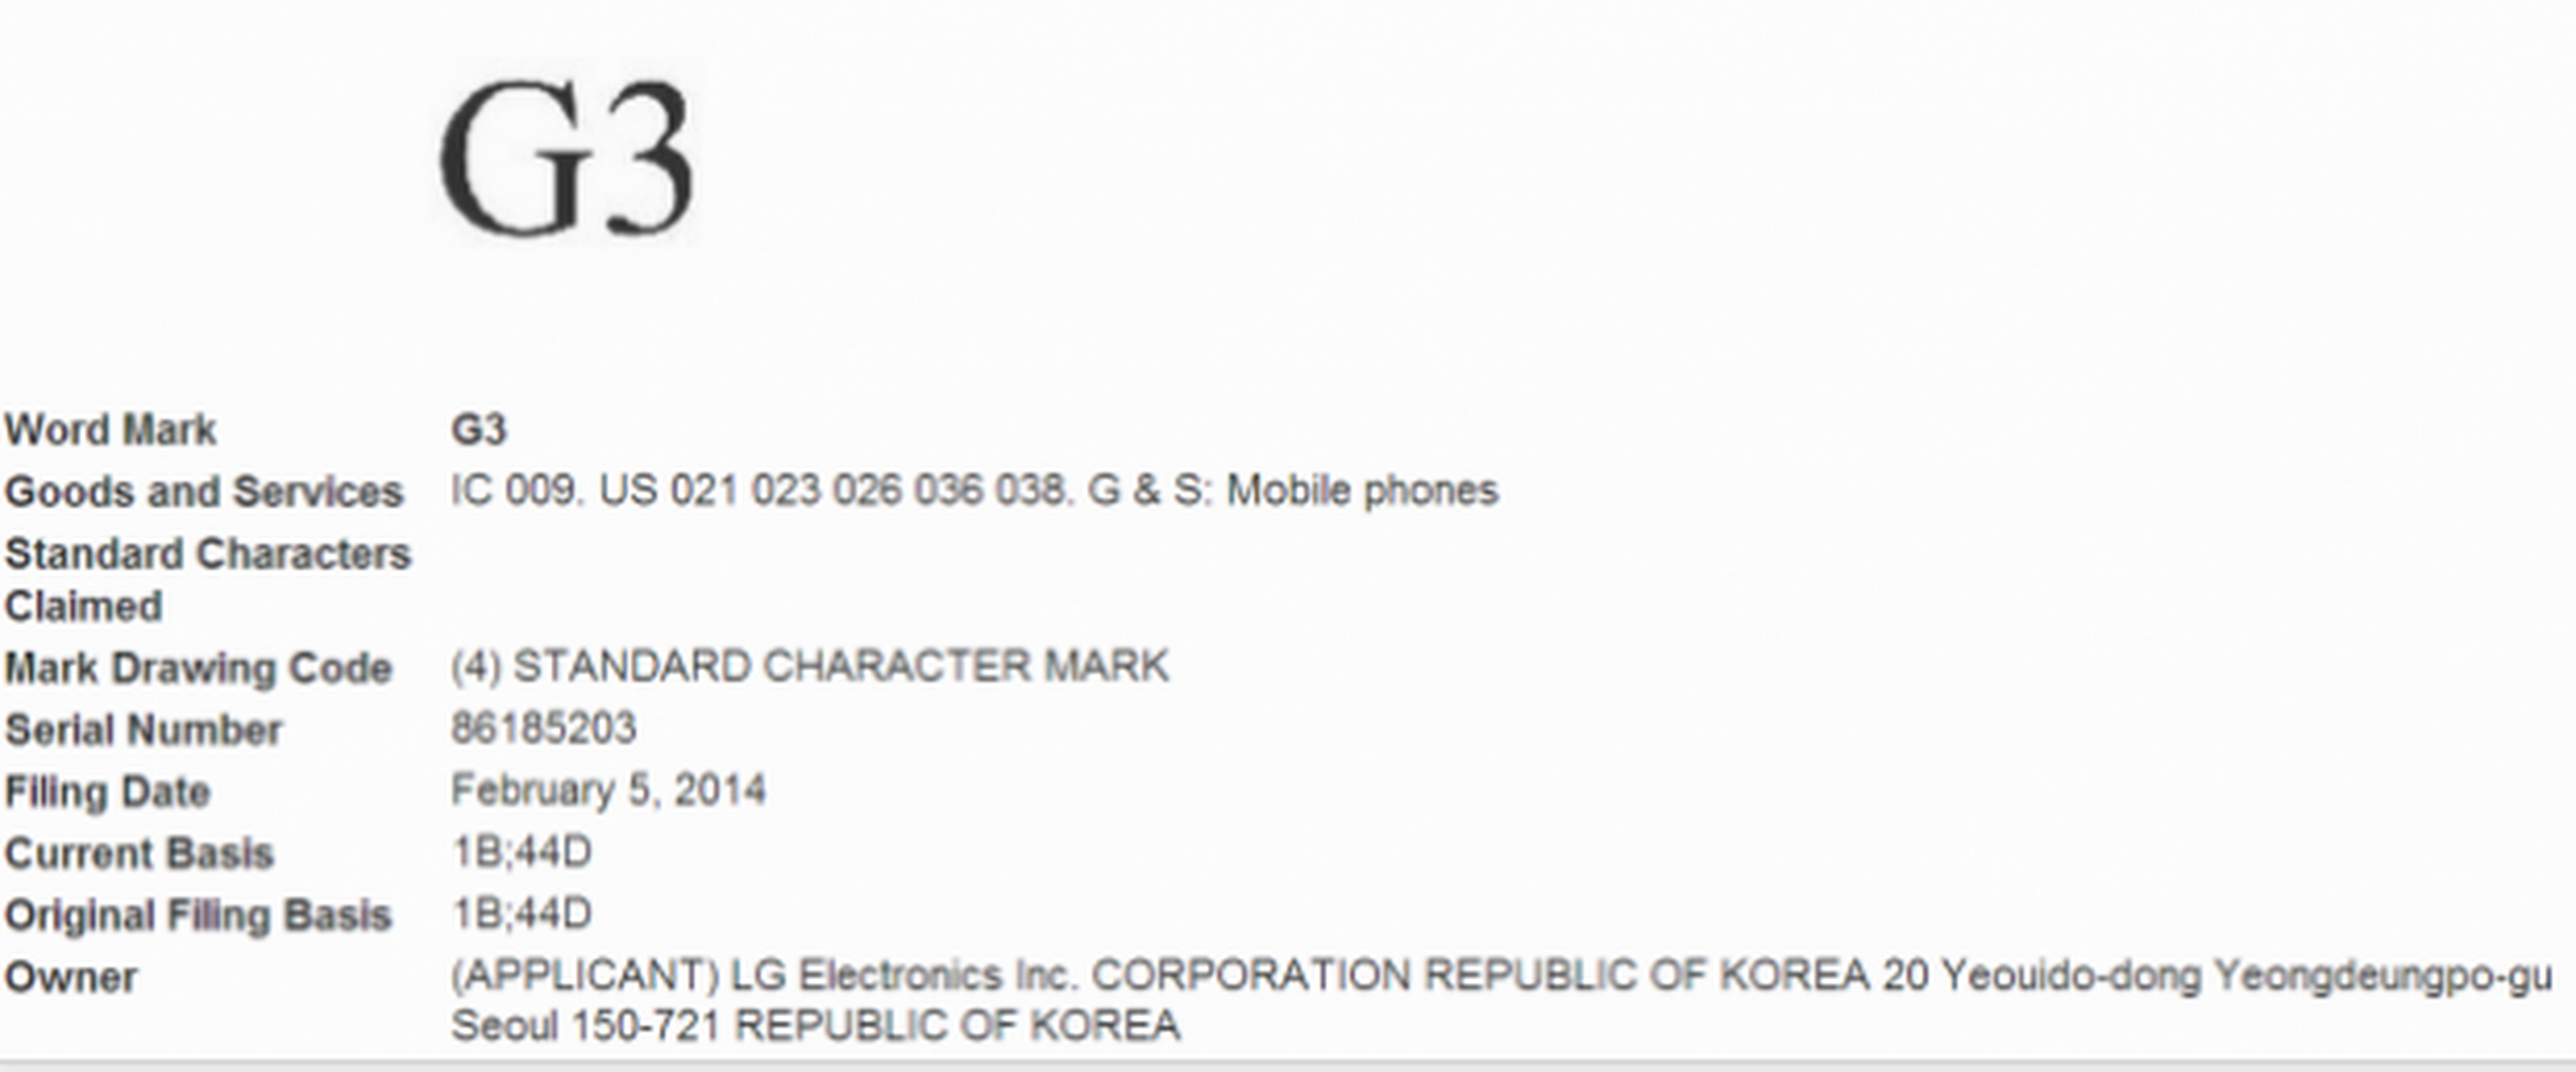 LG G3 trademark registro nombre marca